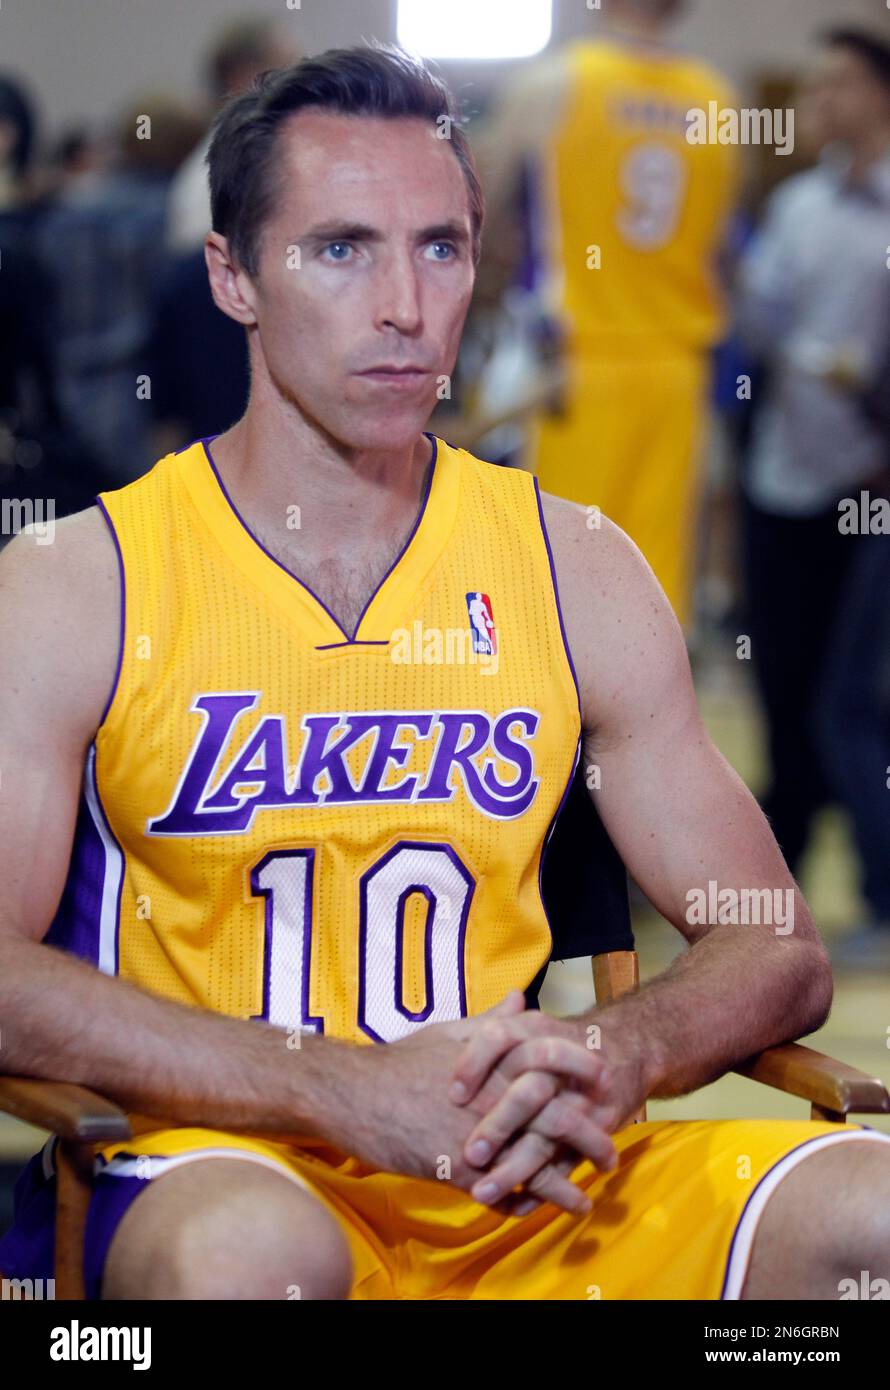 Photos at Los Angeles Lakers Team Shop - El Segundo, CA